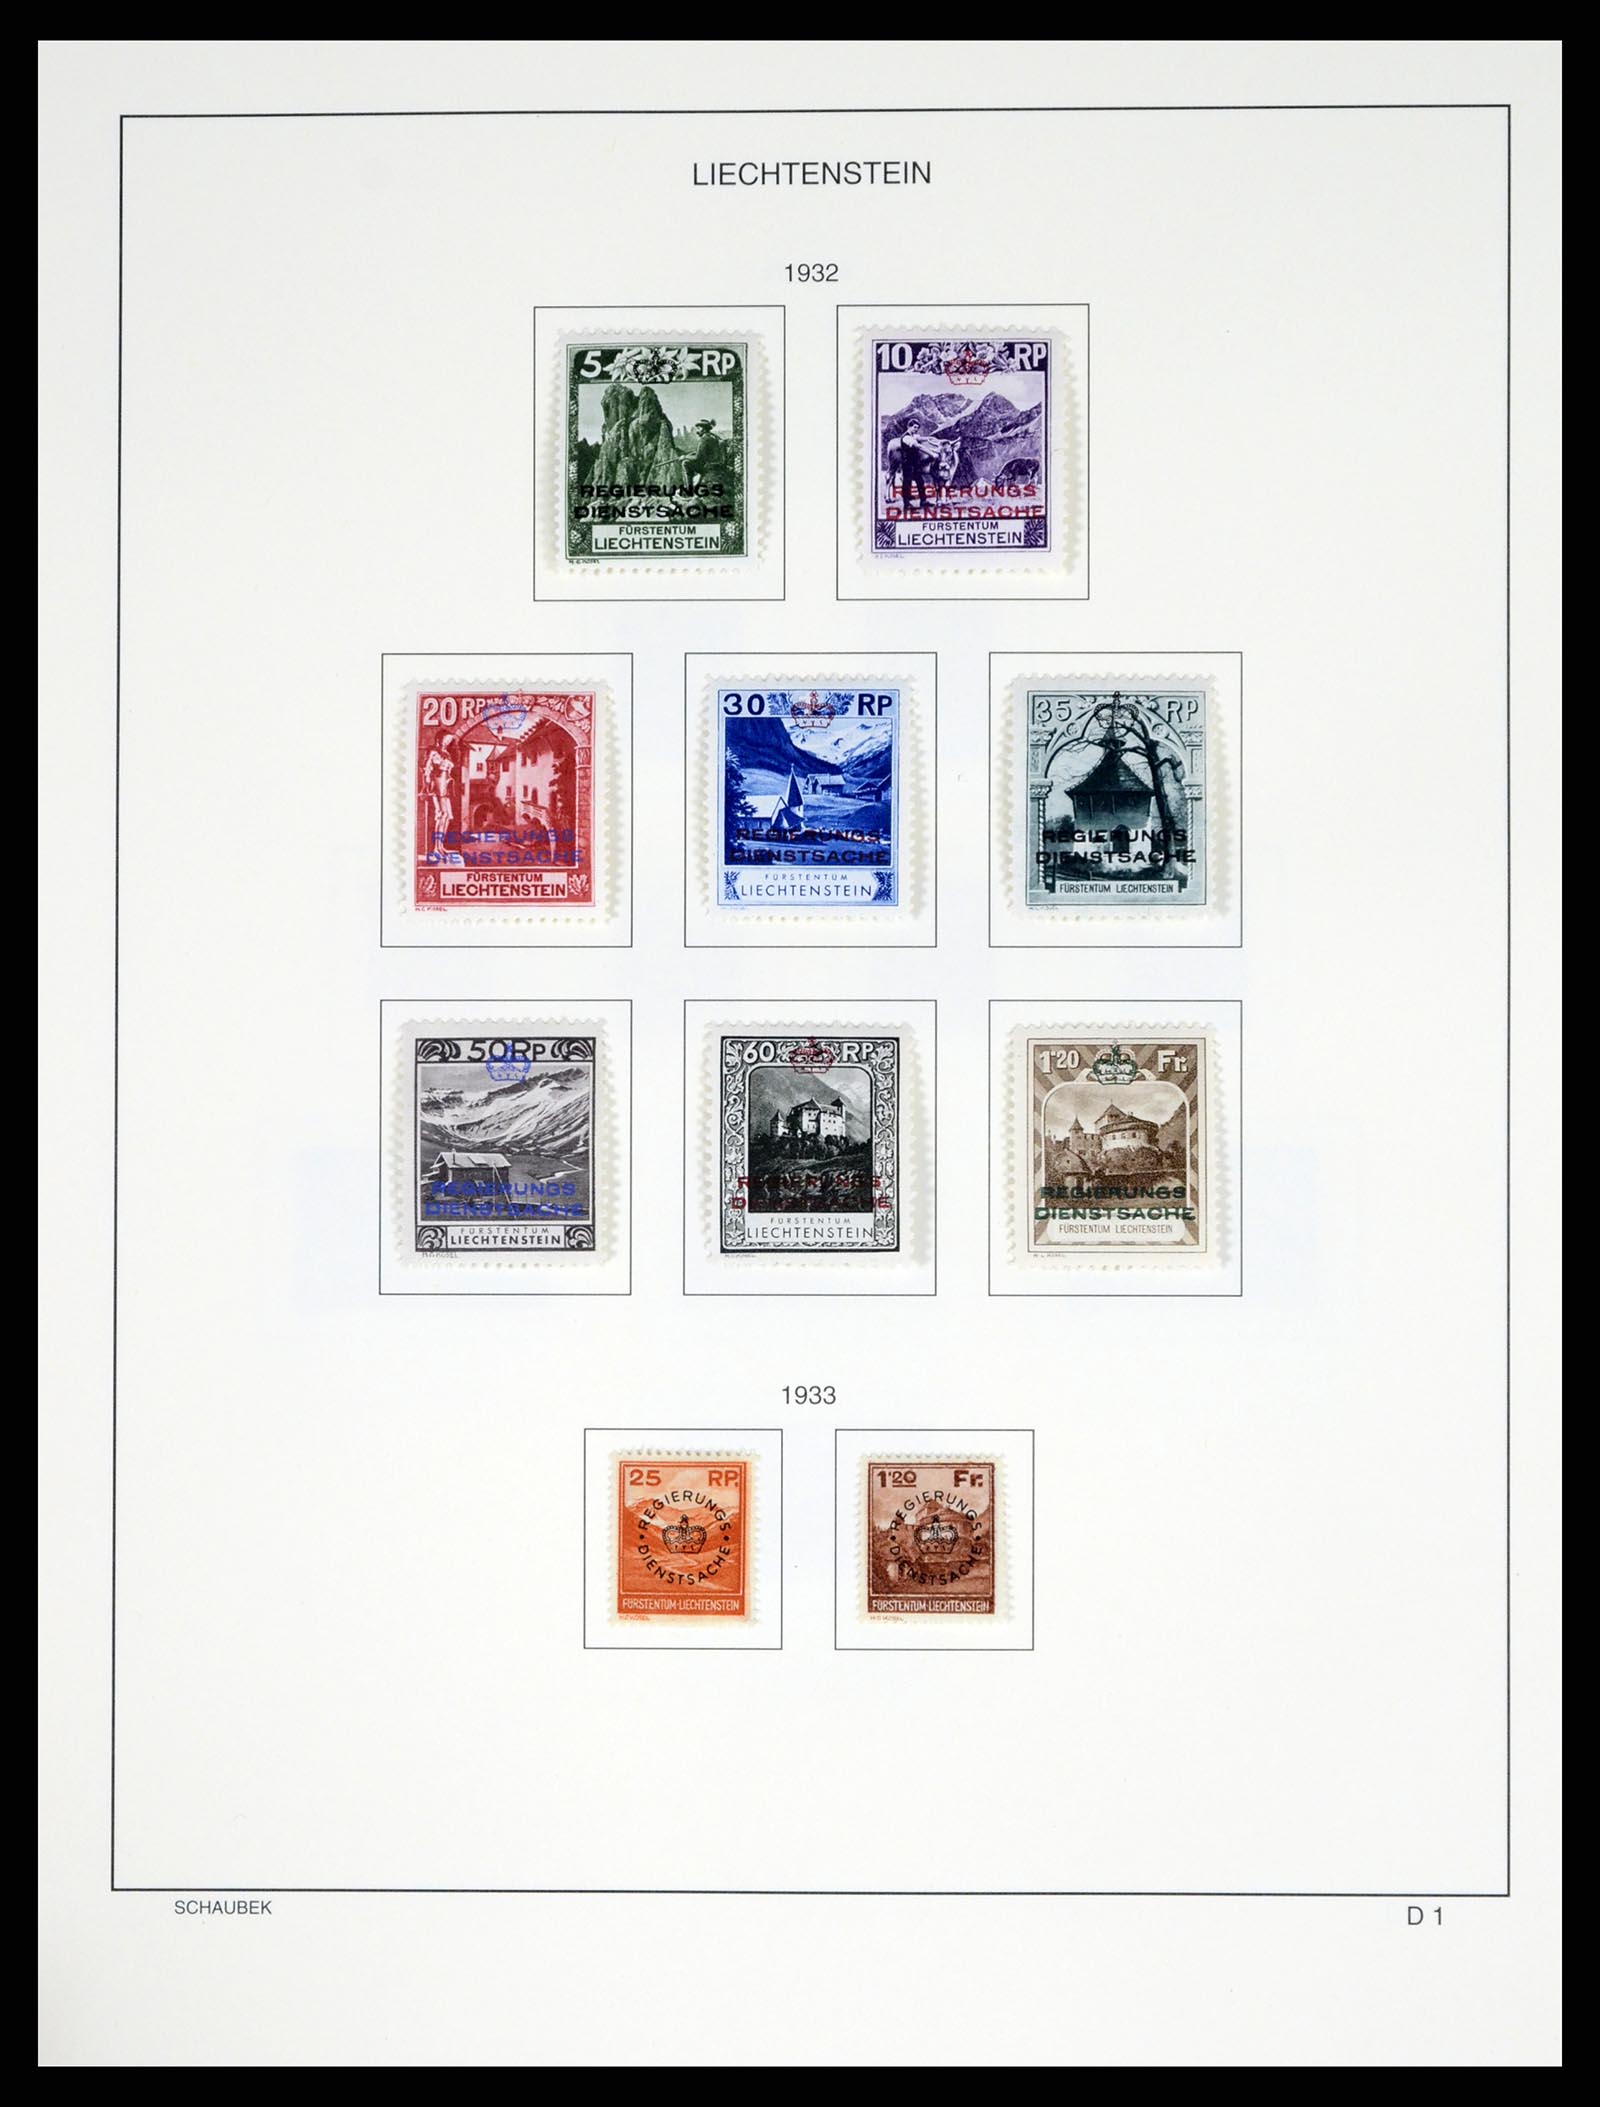 37547 181 - Stamp collection 37547 Liechtenstein 1912-2011.